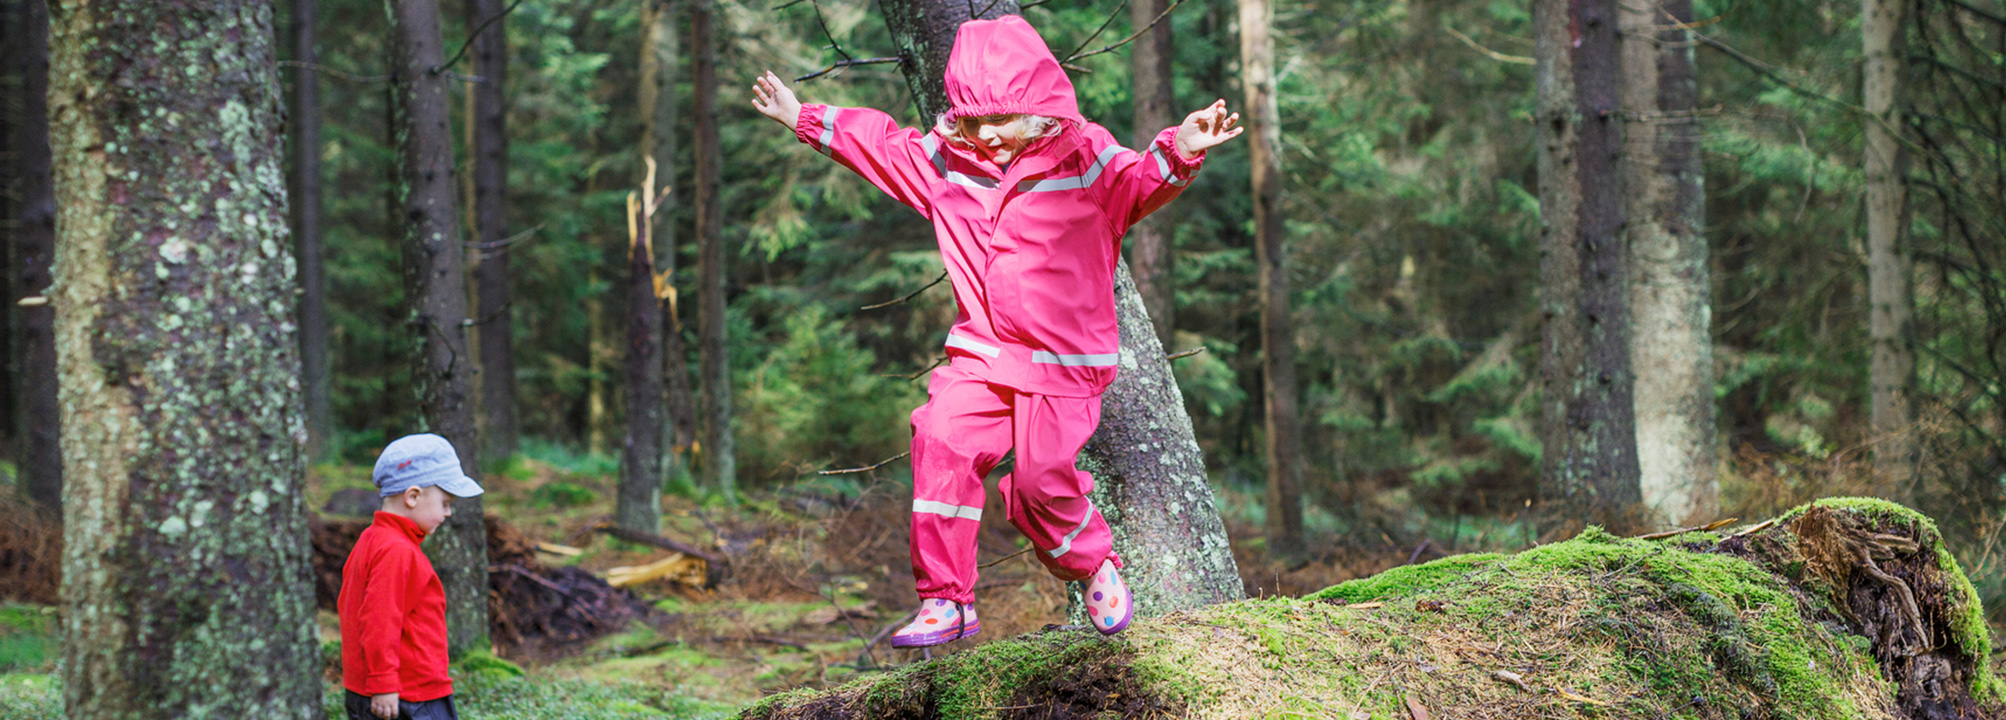 Barn hoppar från sten i skog.